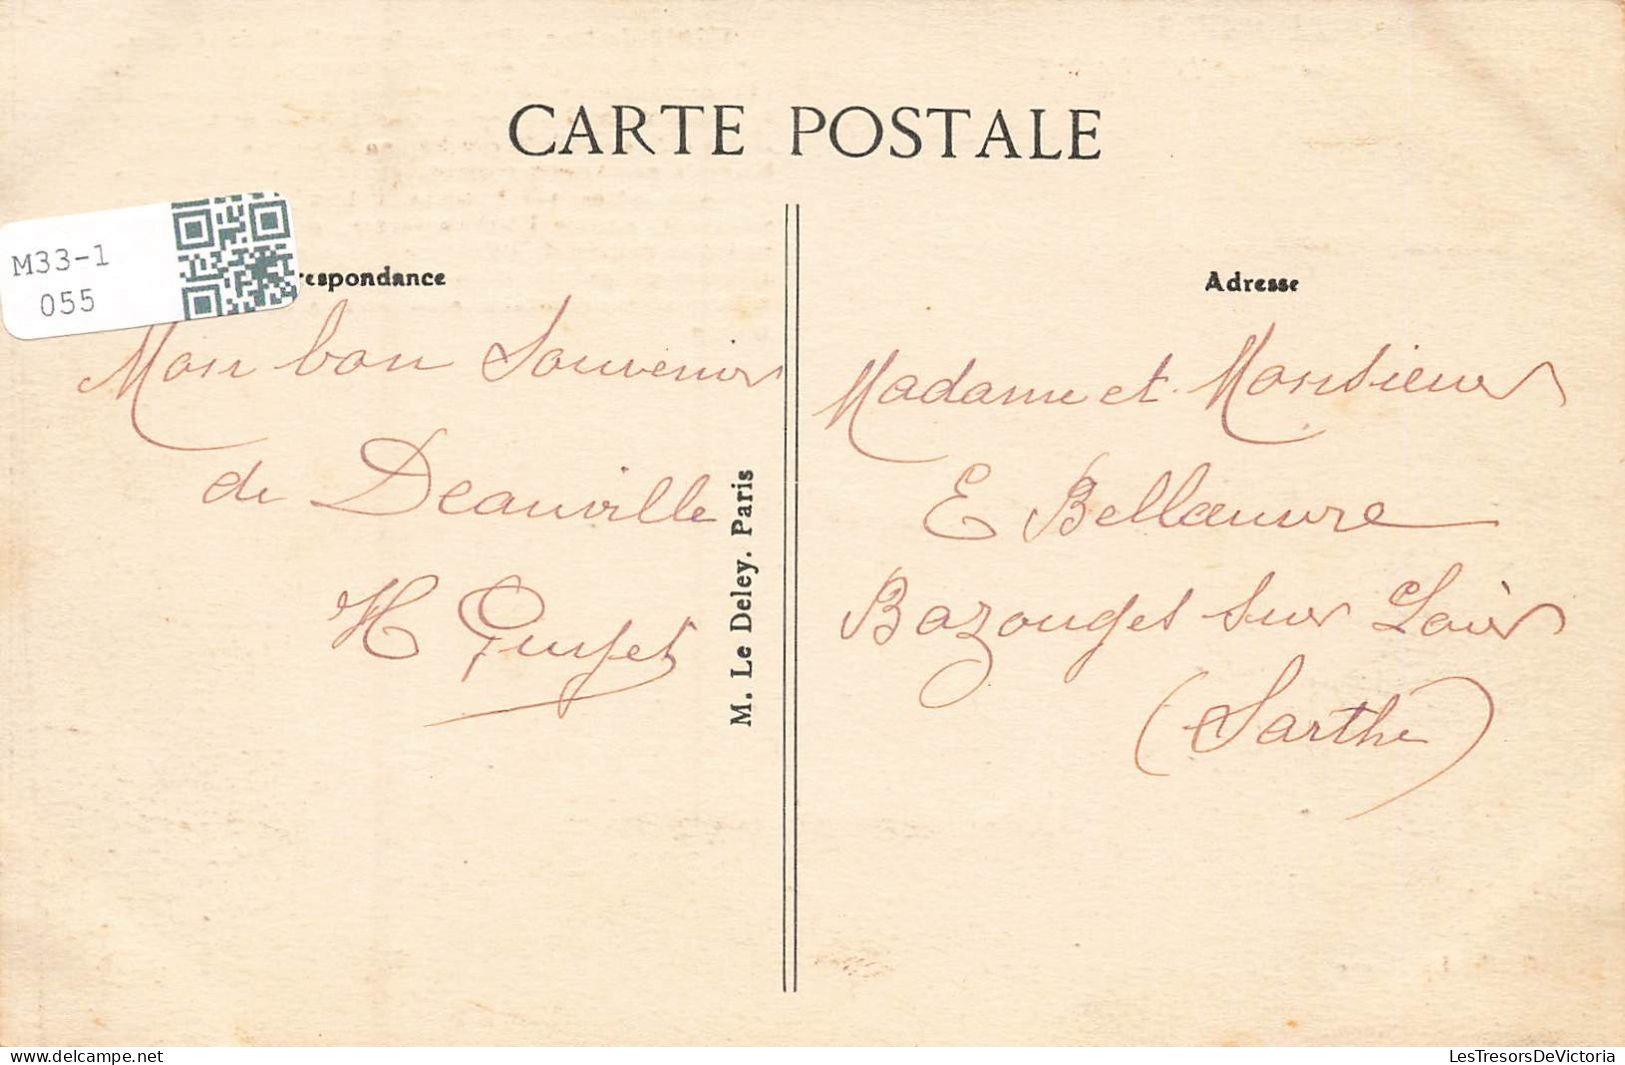 FRANCE - Le Havre - Le Transatlantique "La Lorrainne" - Carte Postale Ancienne - Port